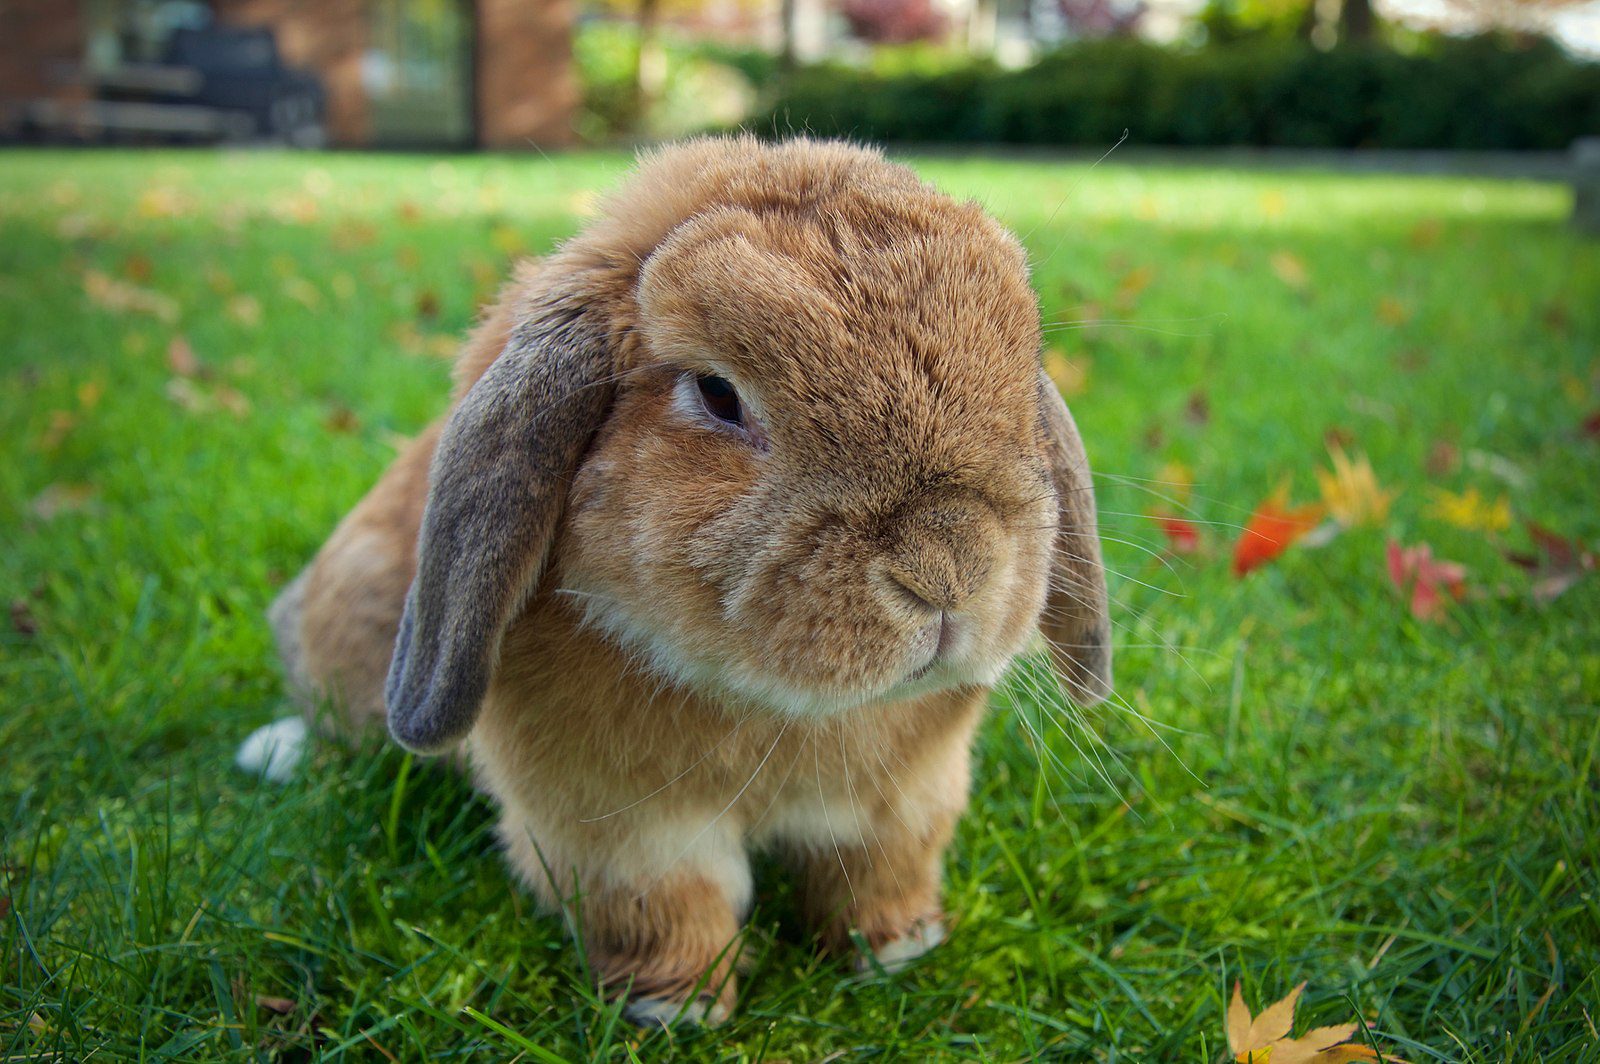 miniature cashmere lop rabbit